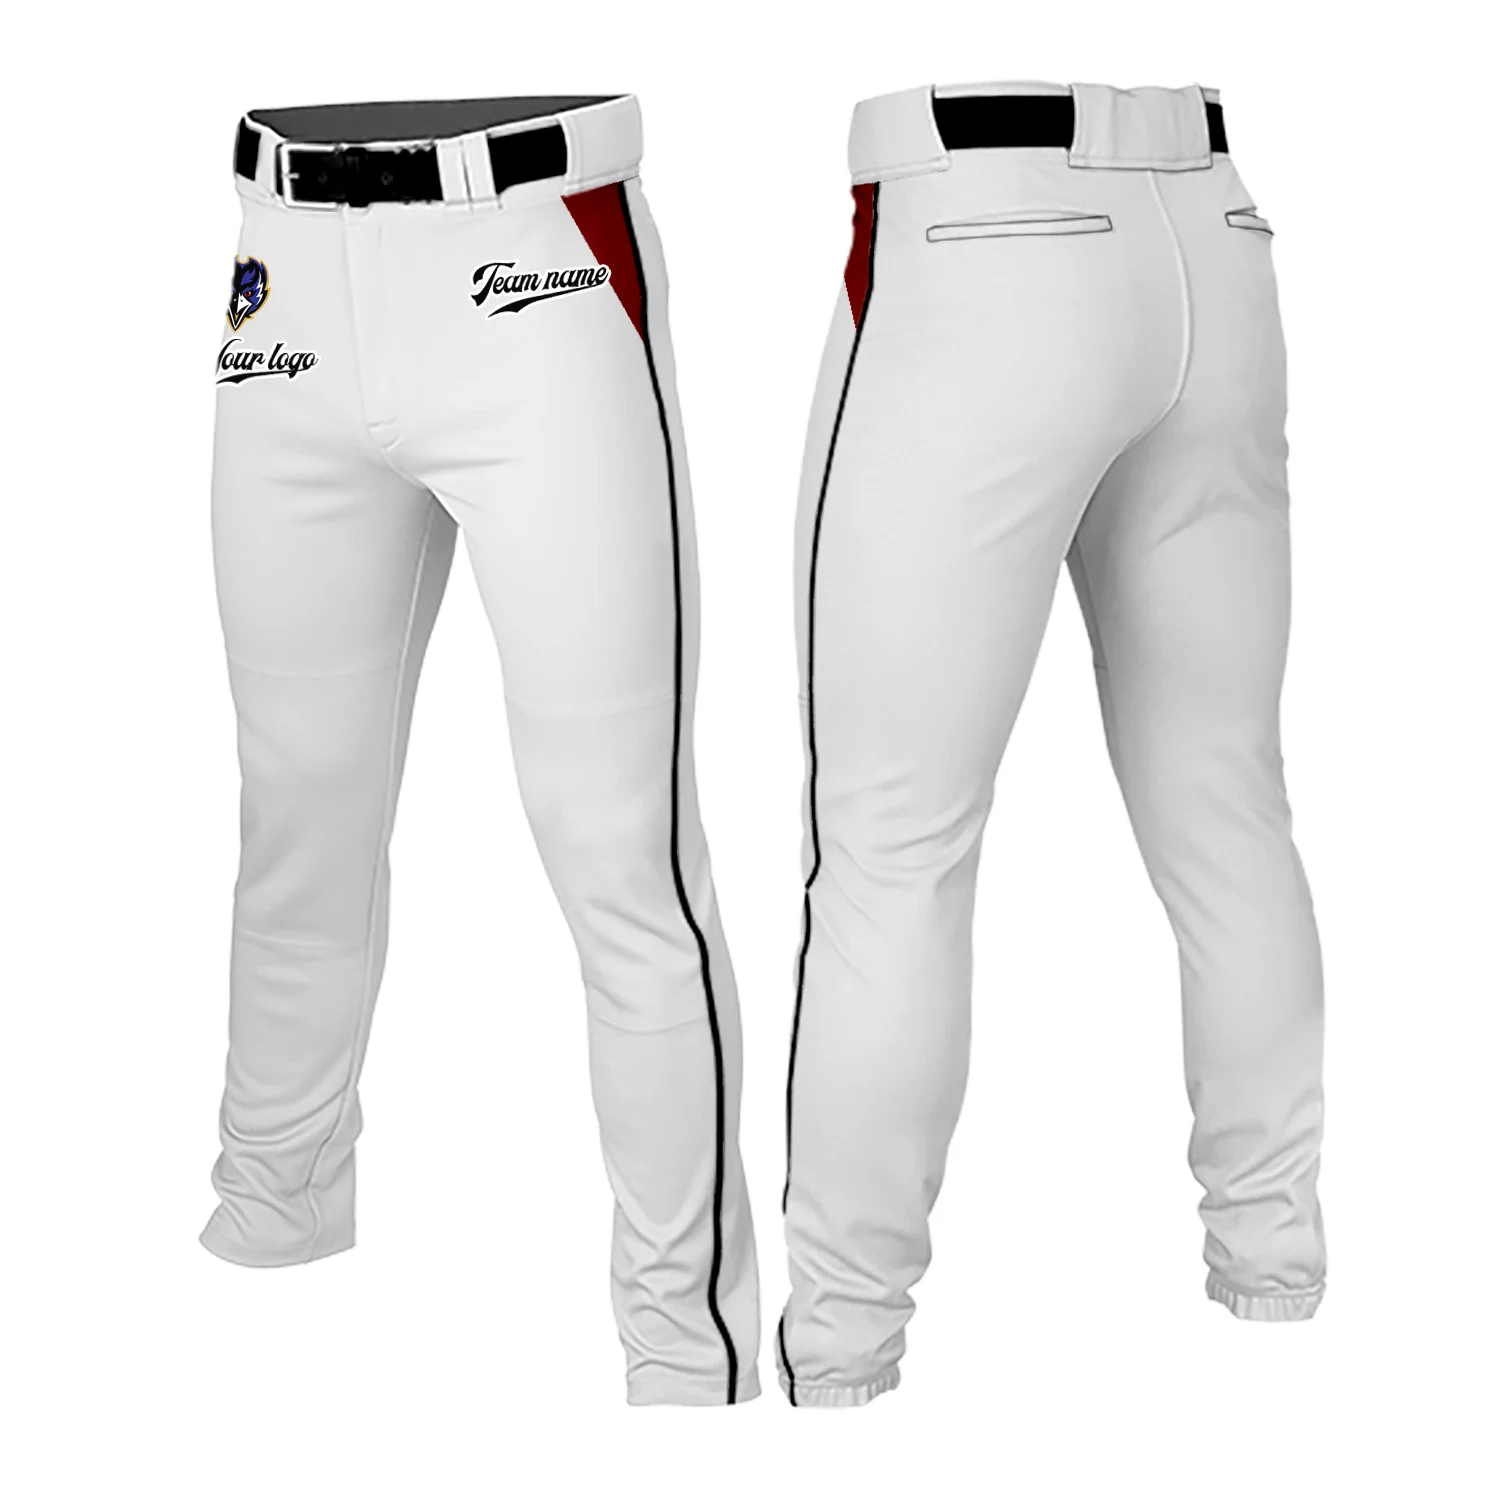 Spodnie do baseballa dla mężczyzn młodzieżowych w jednolitym kolorze spodnie treningowe spodnie z kieszeniami wędrówek do biegania